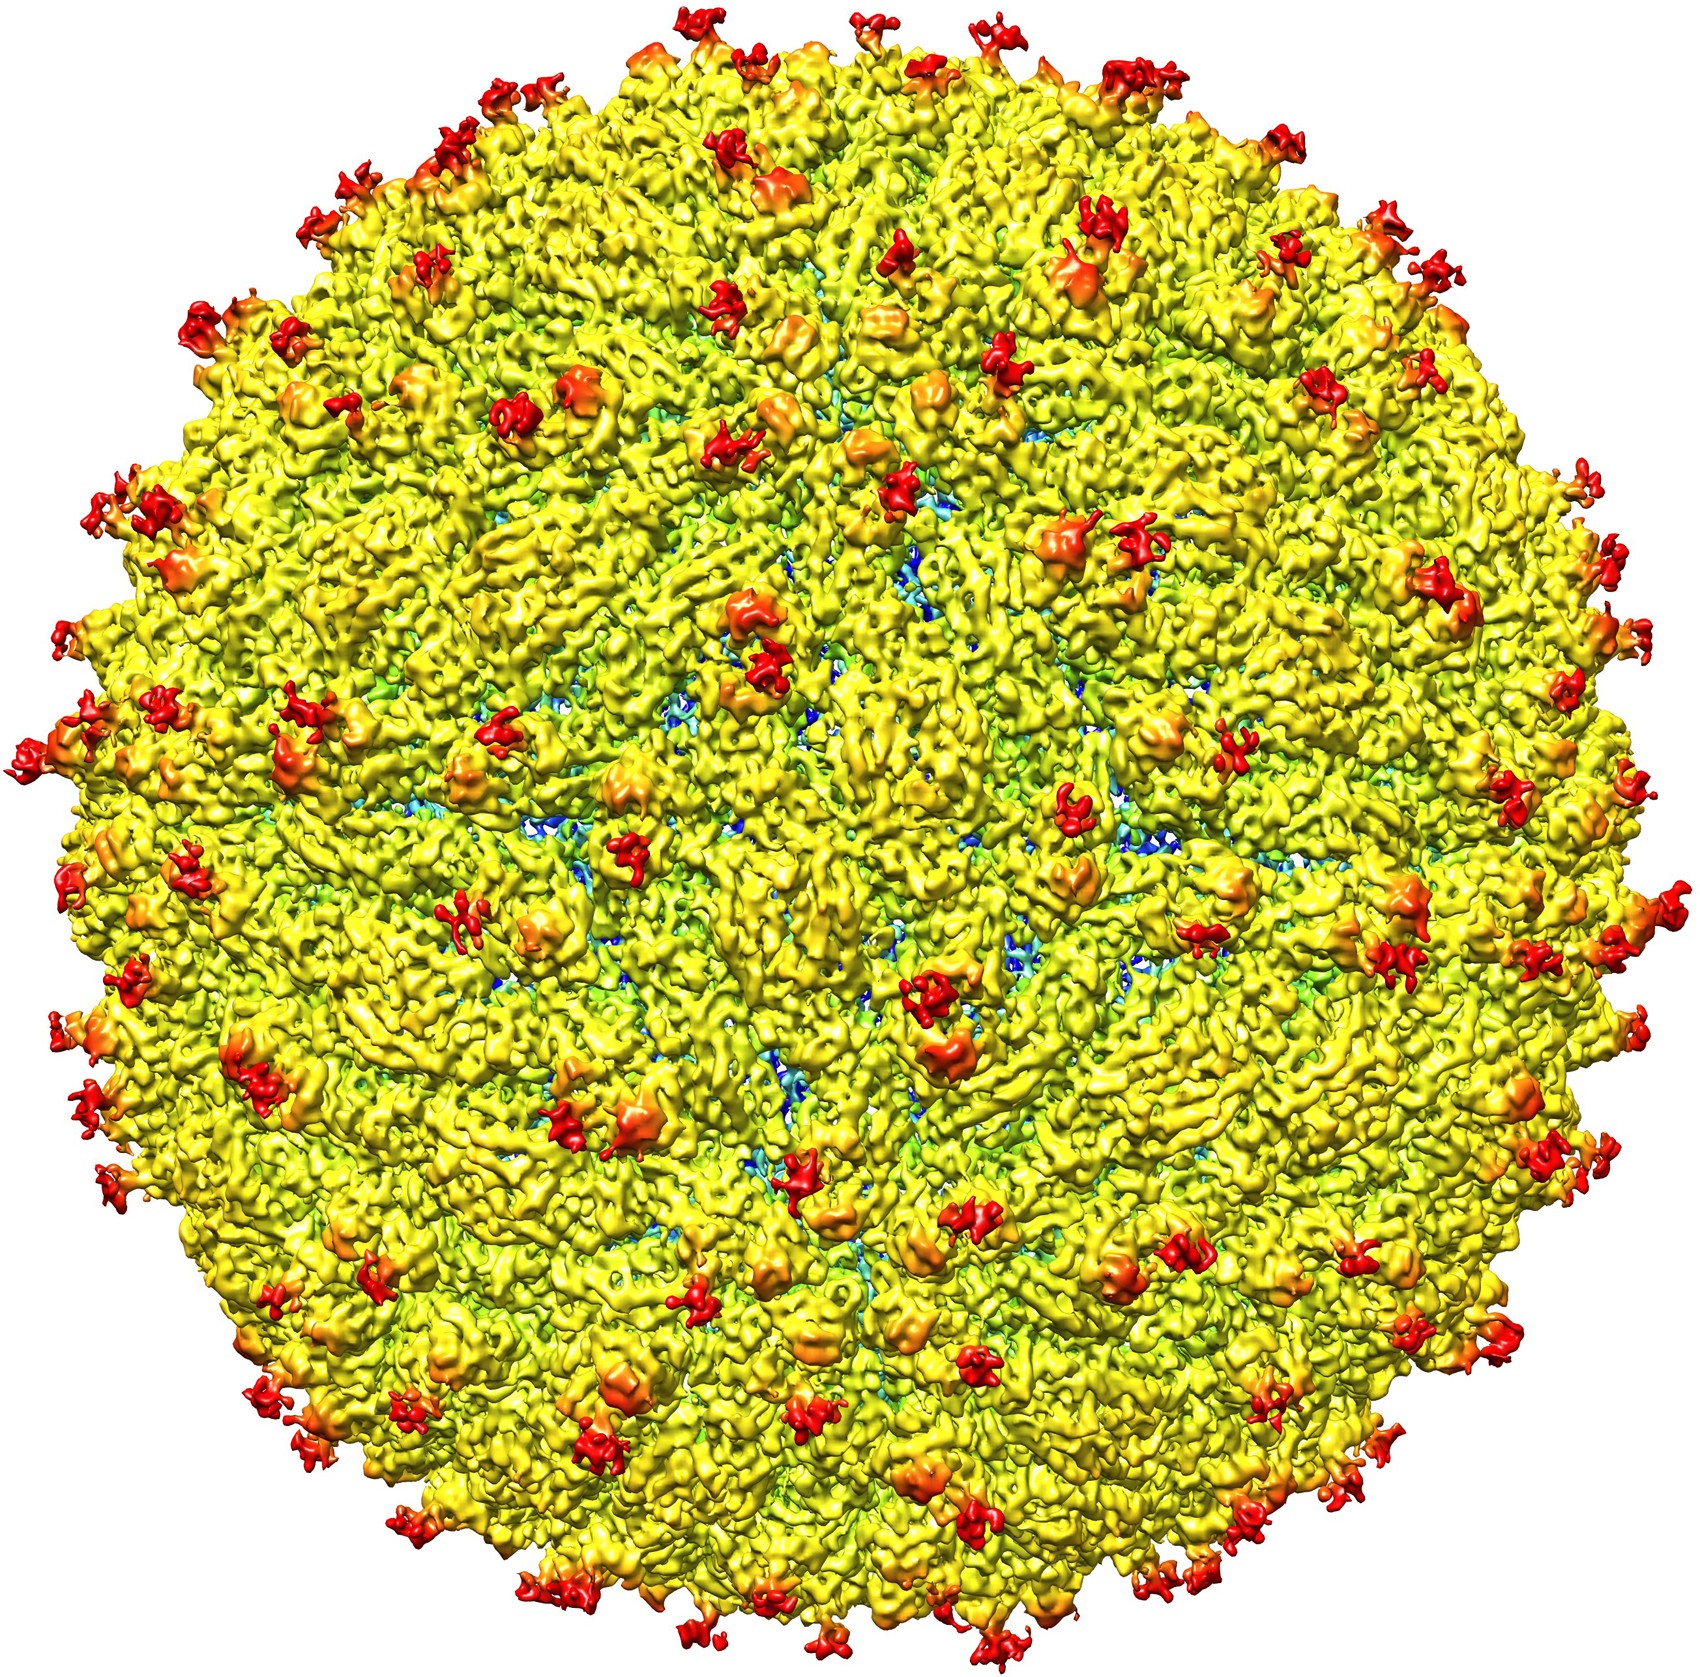 Imagem é representação da superfície do vírus da zika; equipe de cientistas conseguiu determinar a estrutura do vírus pela primeira vez  (Foto: Universidade Purdue/Cortesia)